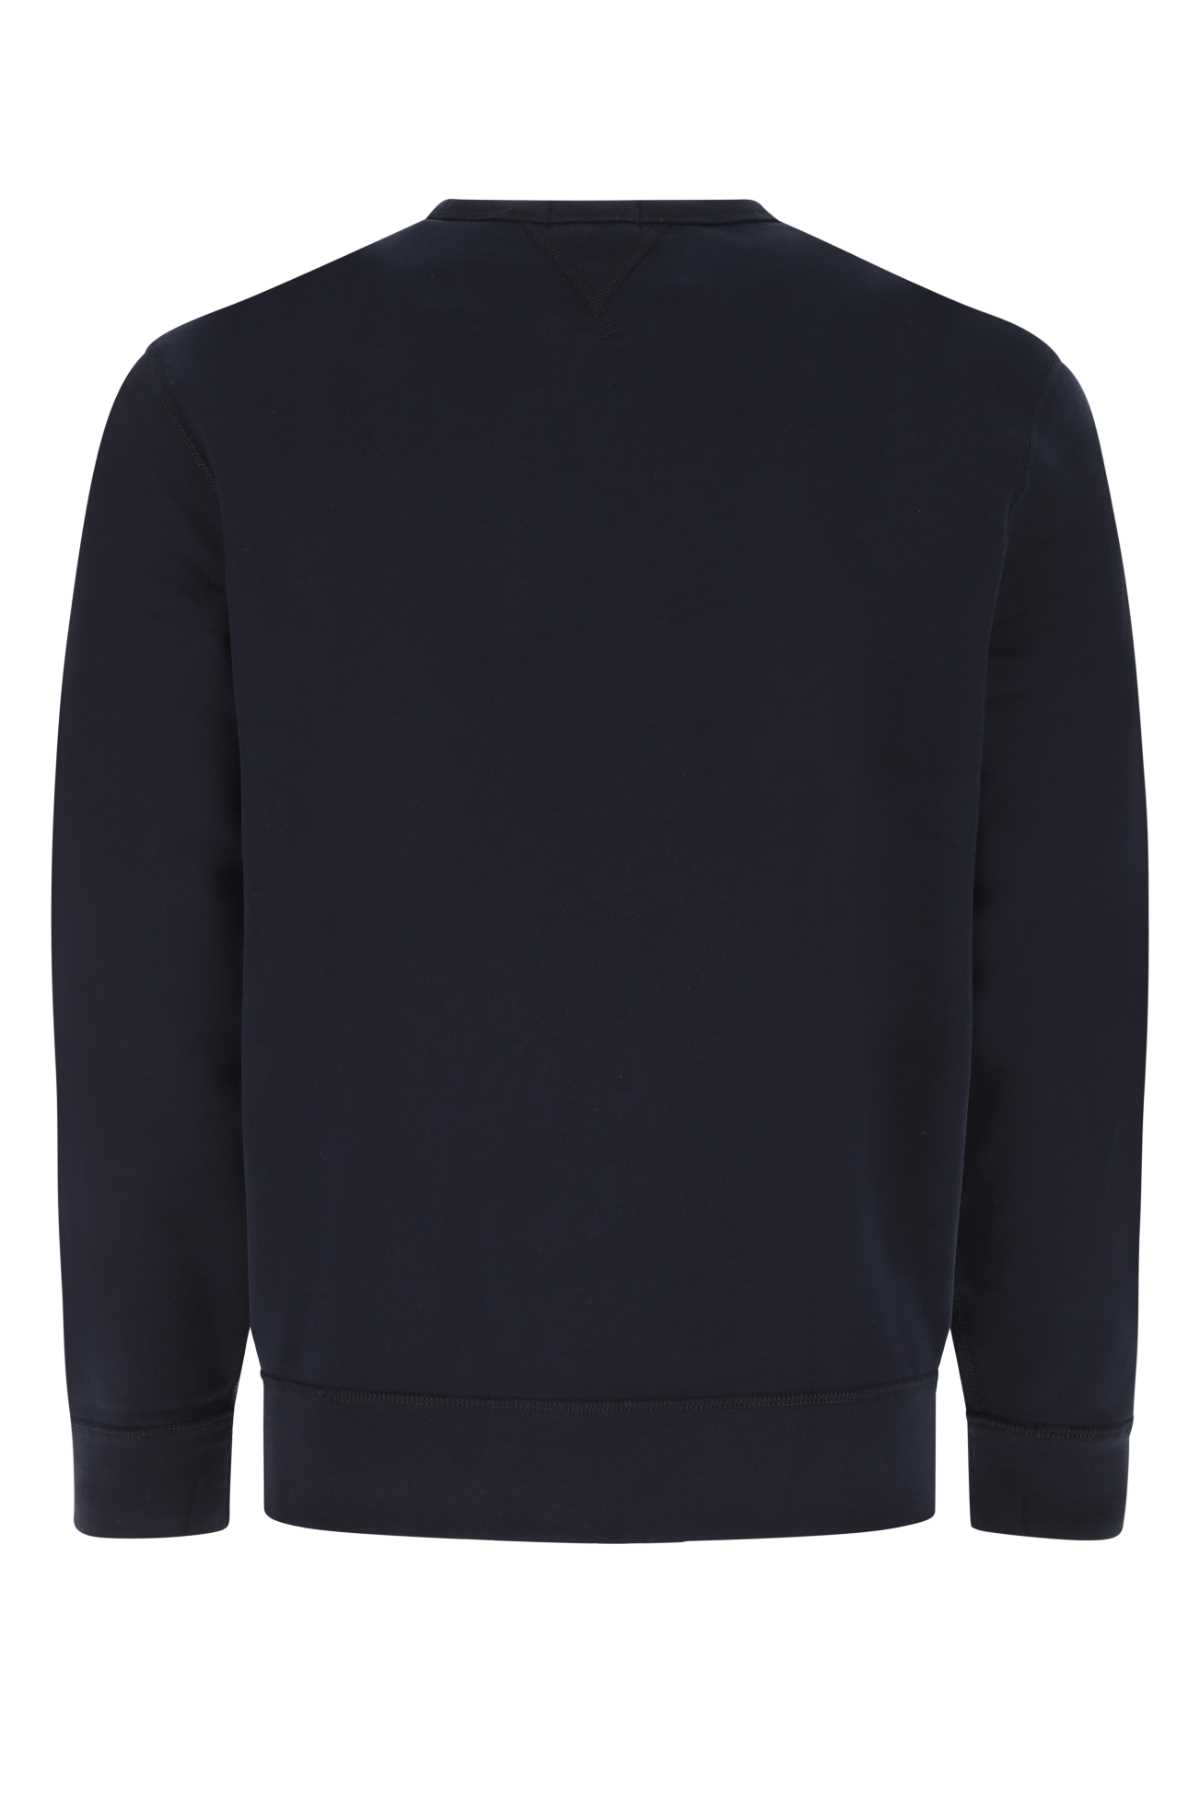 Polo Ralph Lauren Dark Blue Cotton Blend Sweatshirt In 003